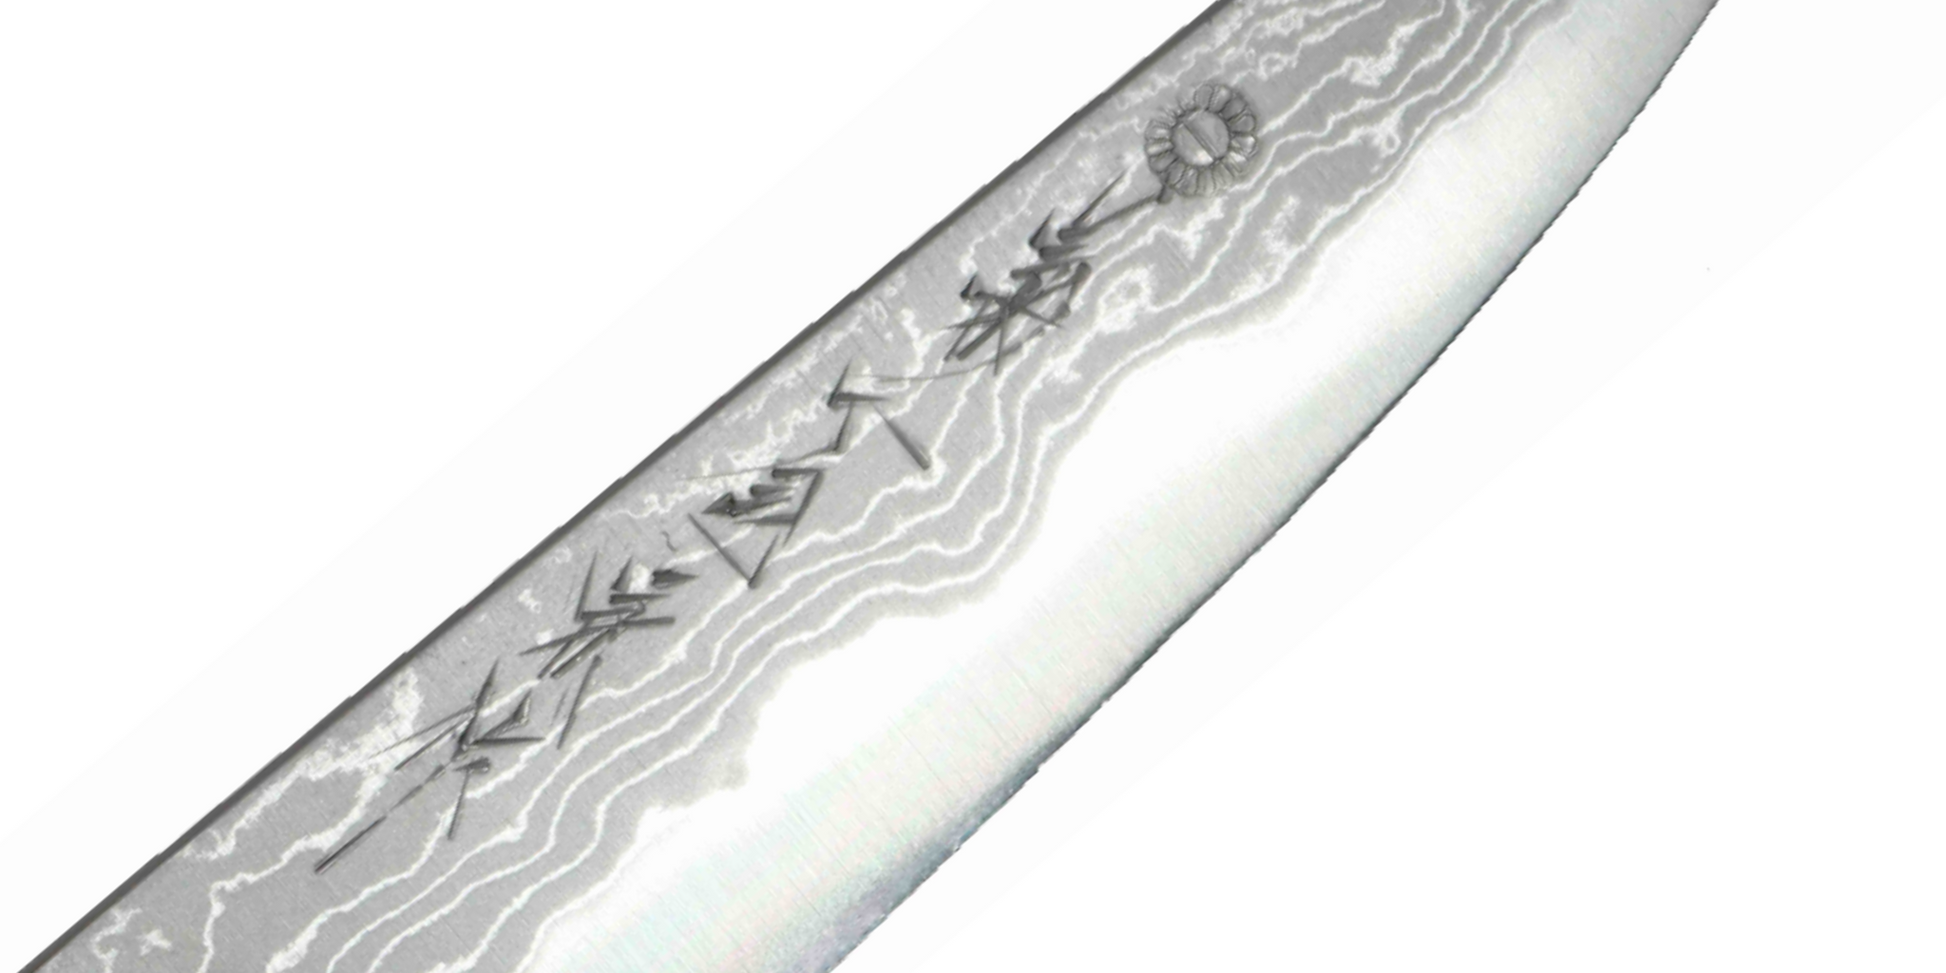 GKAD Gyuto - Hand Engraved Blade